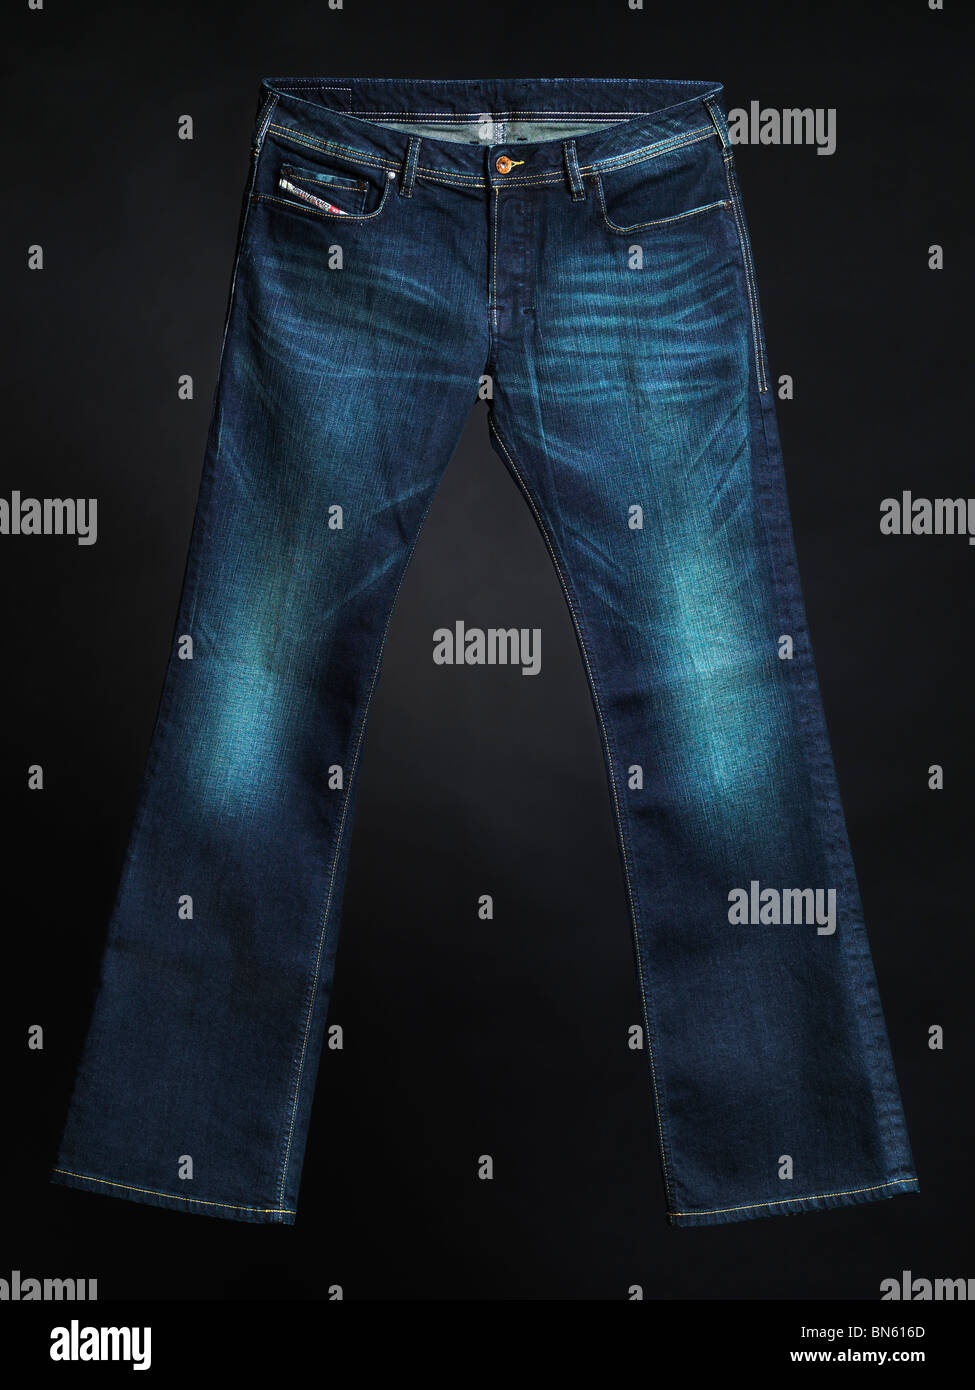 Jeans diesel immagini e fotografie stock ad alta risoluzione - Alamy